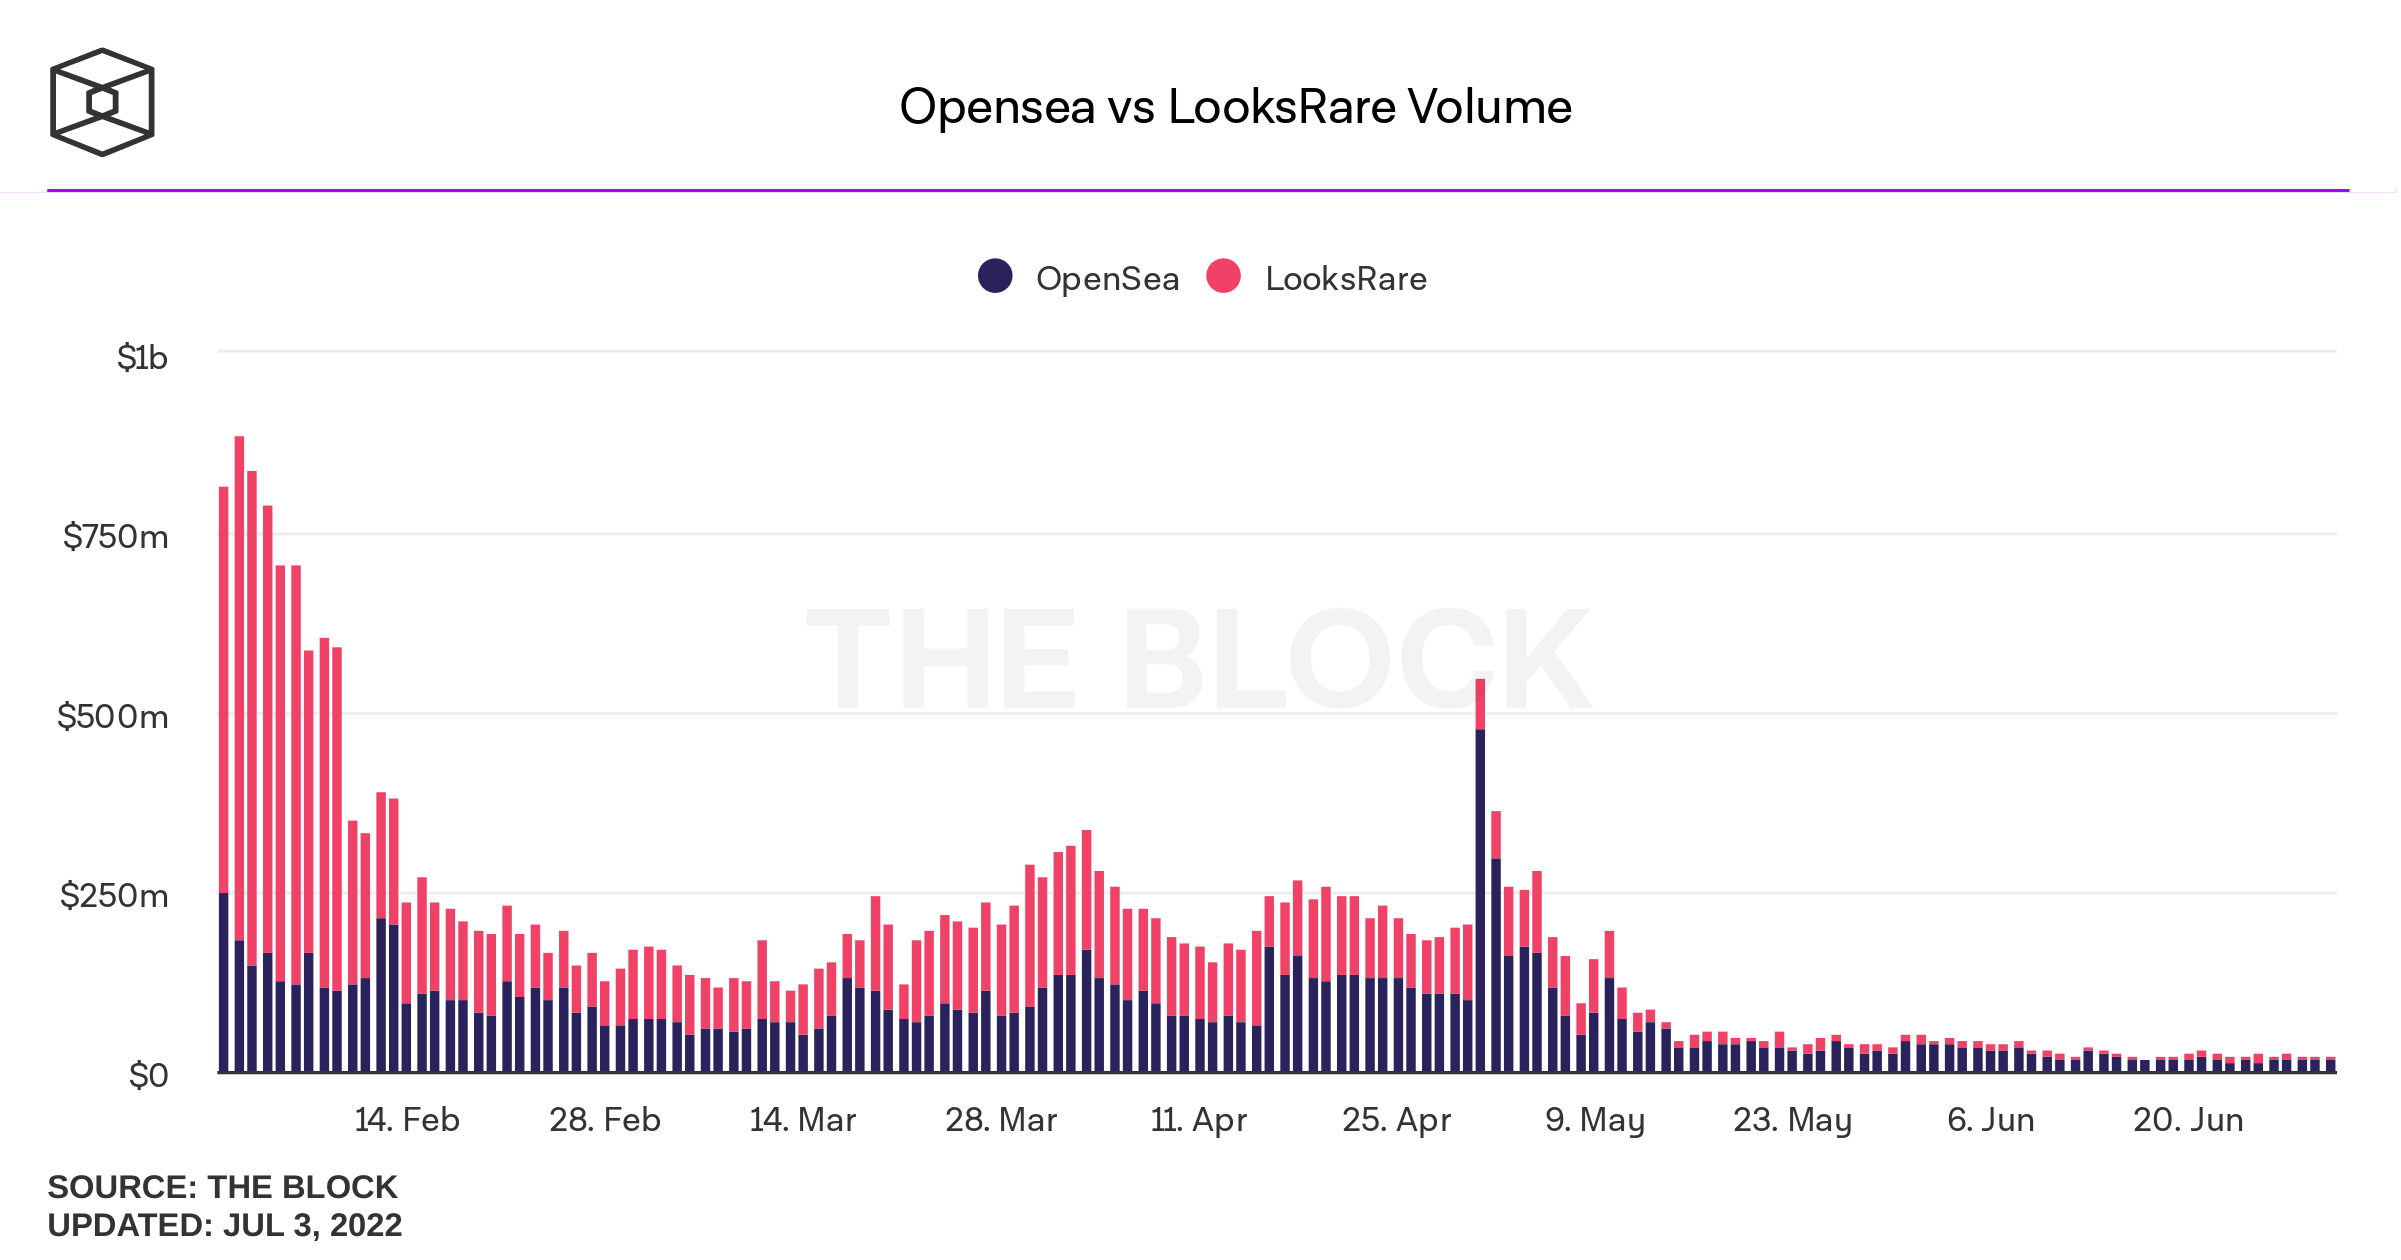 LooksRare versus OpenSea